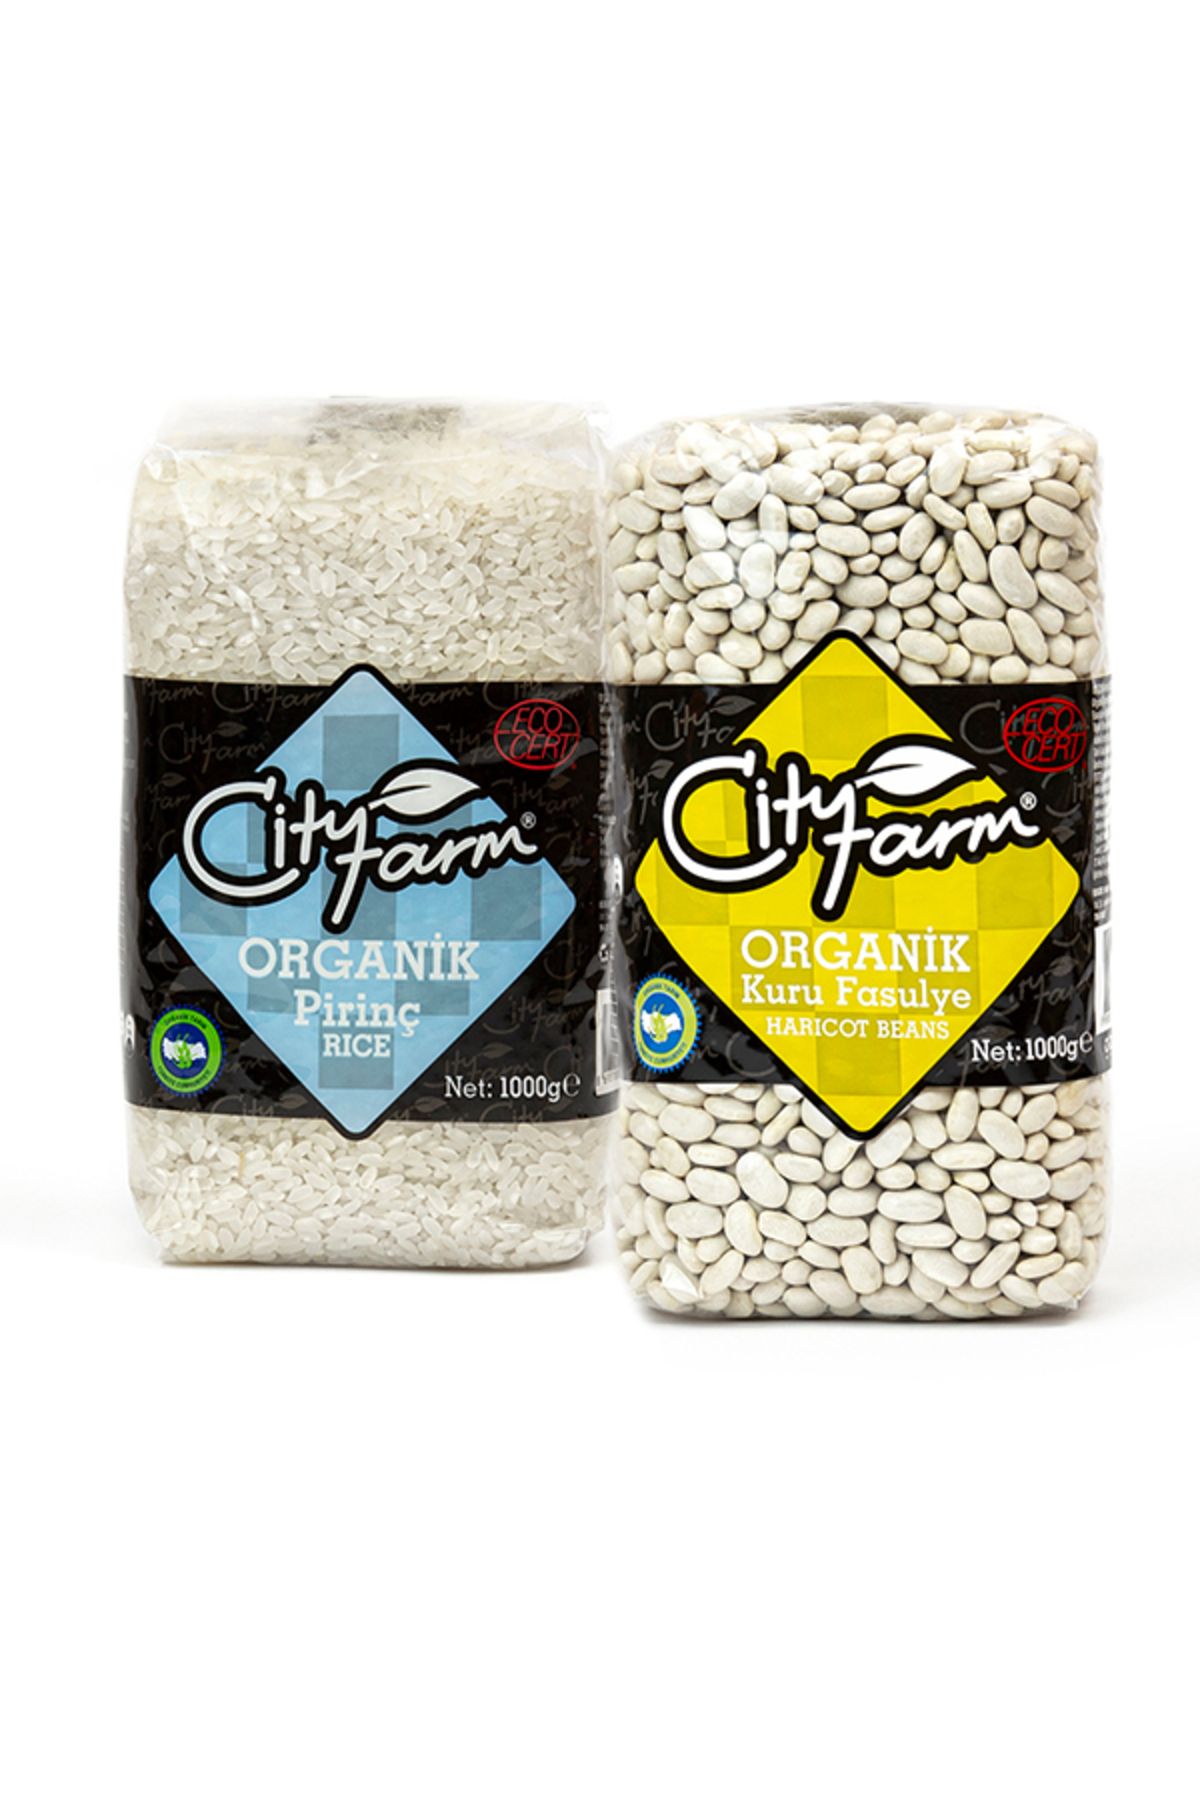 CityFarm Organik Pirinç 1 kg ve Organik Kuru Fasulye 1 kg